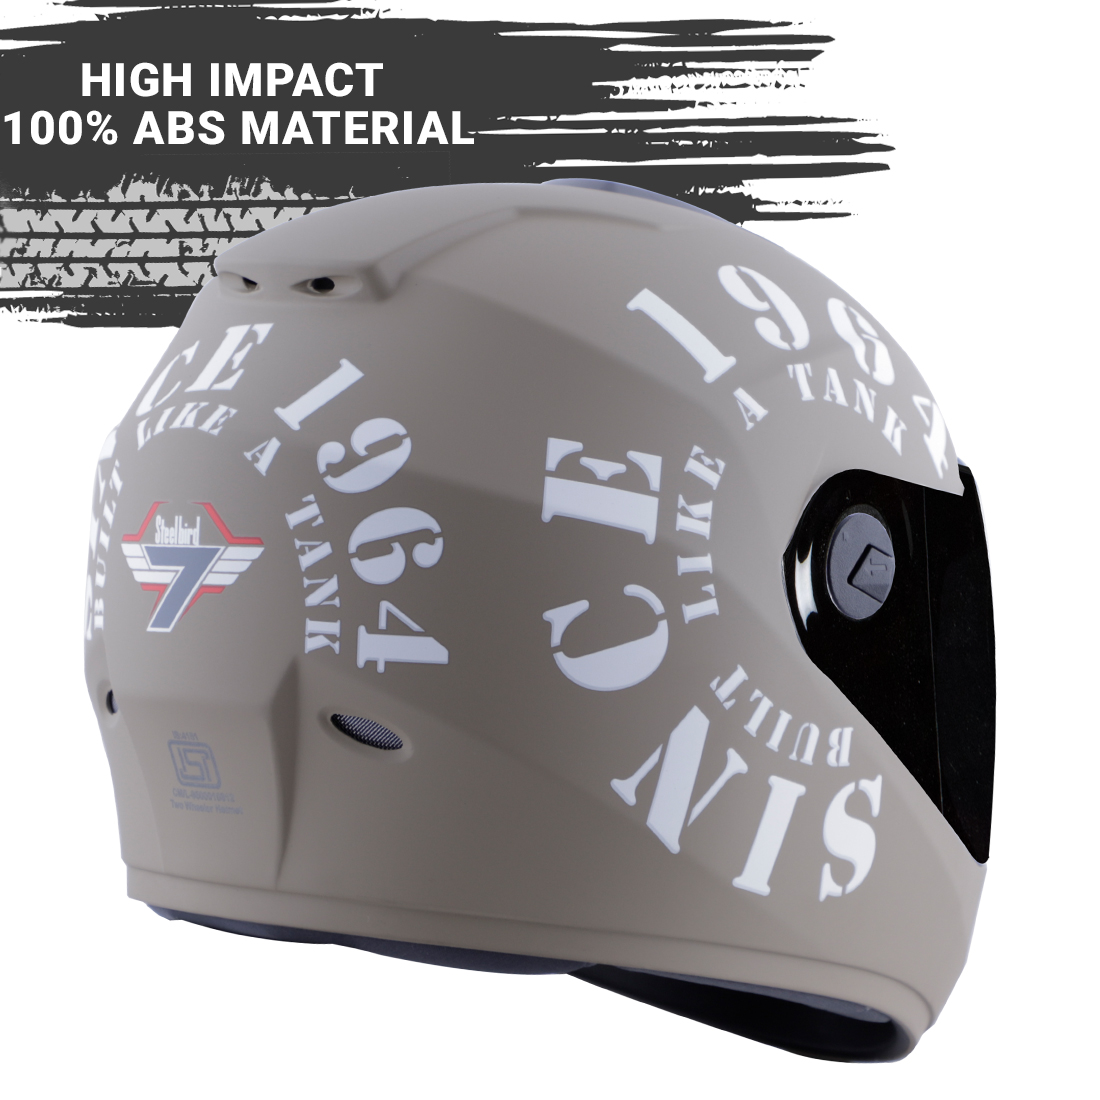 Steelbird SBH-11 Zoom Tank Full Face ISI Certified Helmet (Matt Desert Storm White With Smoke Visor)